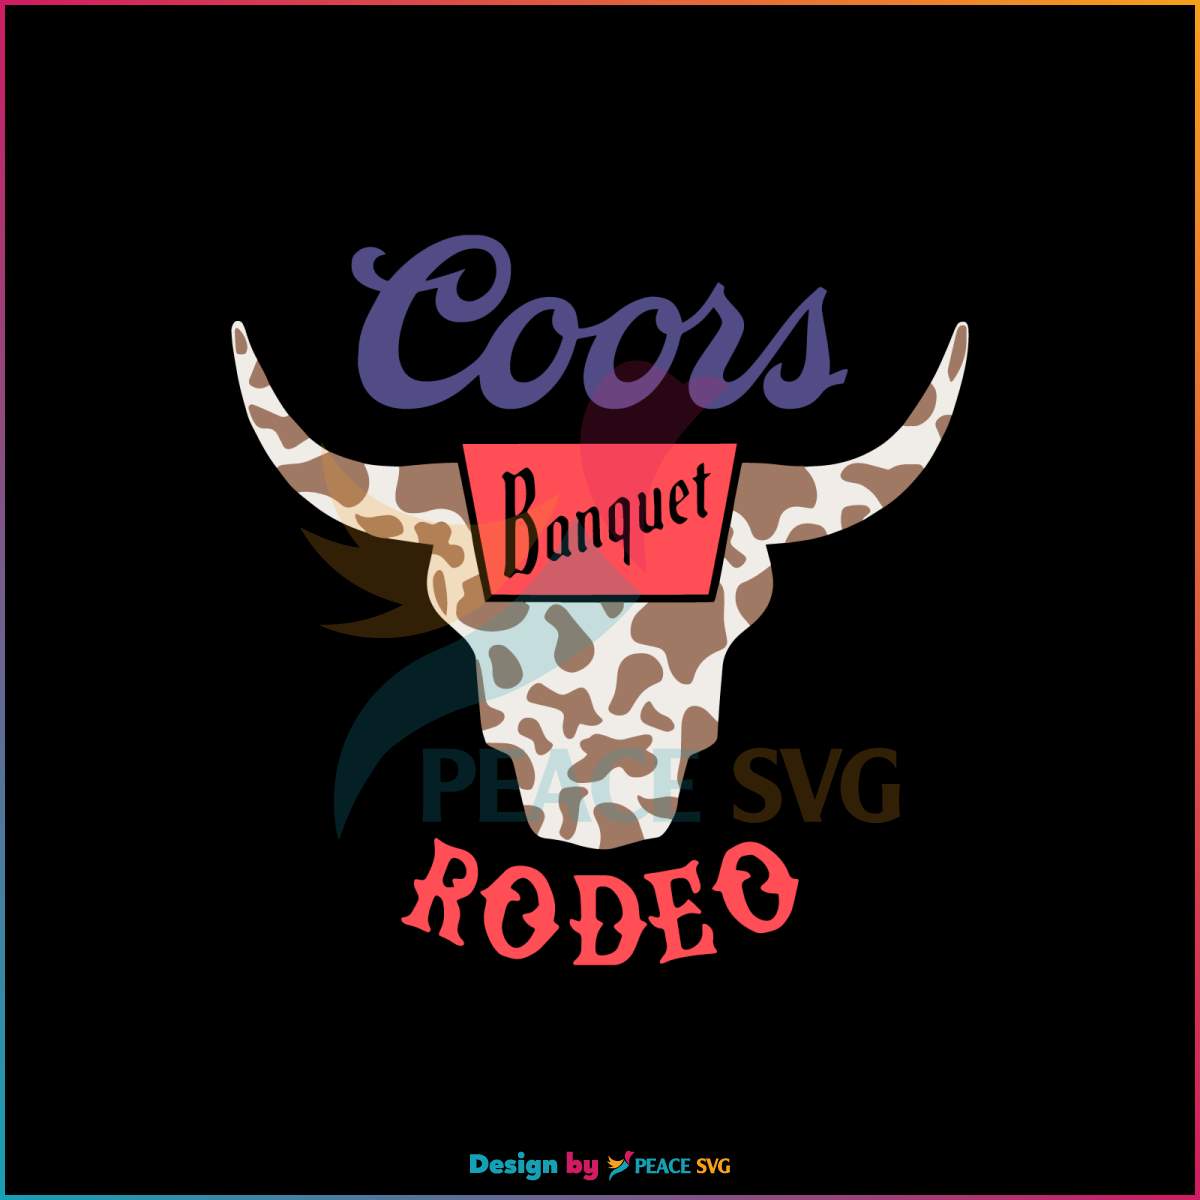 retro-coors-banquet-rodeo-svg-bull-skull-svg-digital-file